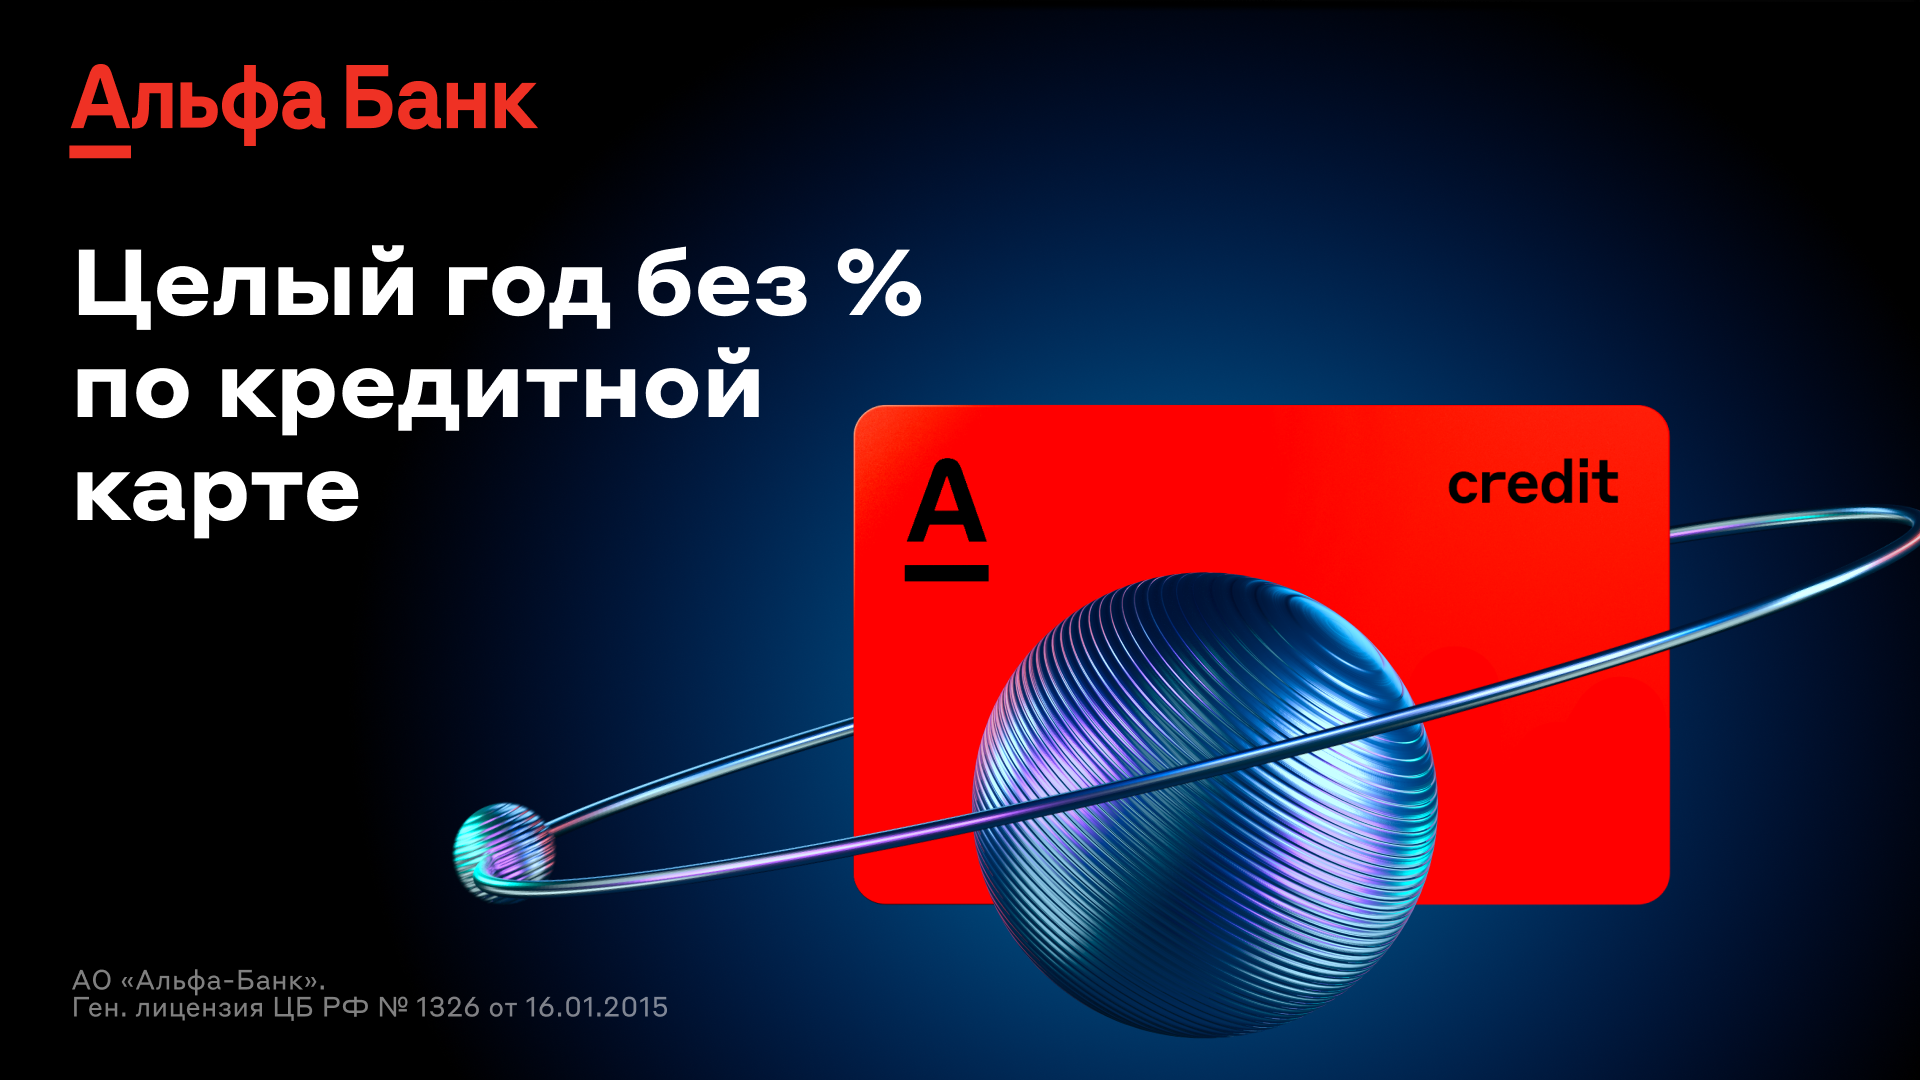 Новая акция Альфа-Банка: вечное бесплатное обслуживание кредитки «365 дней без %» и 1000 рублей за первую покупку